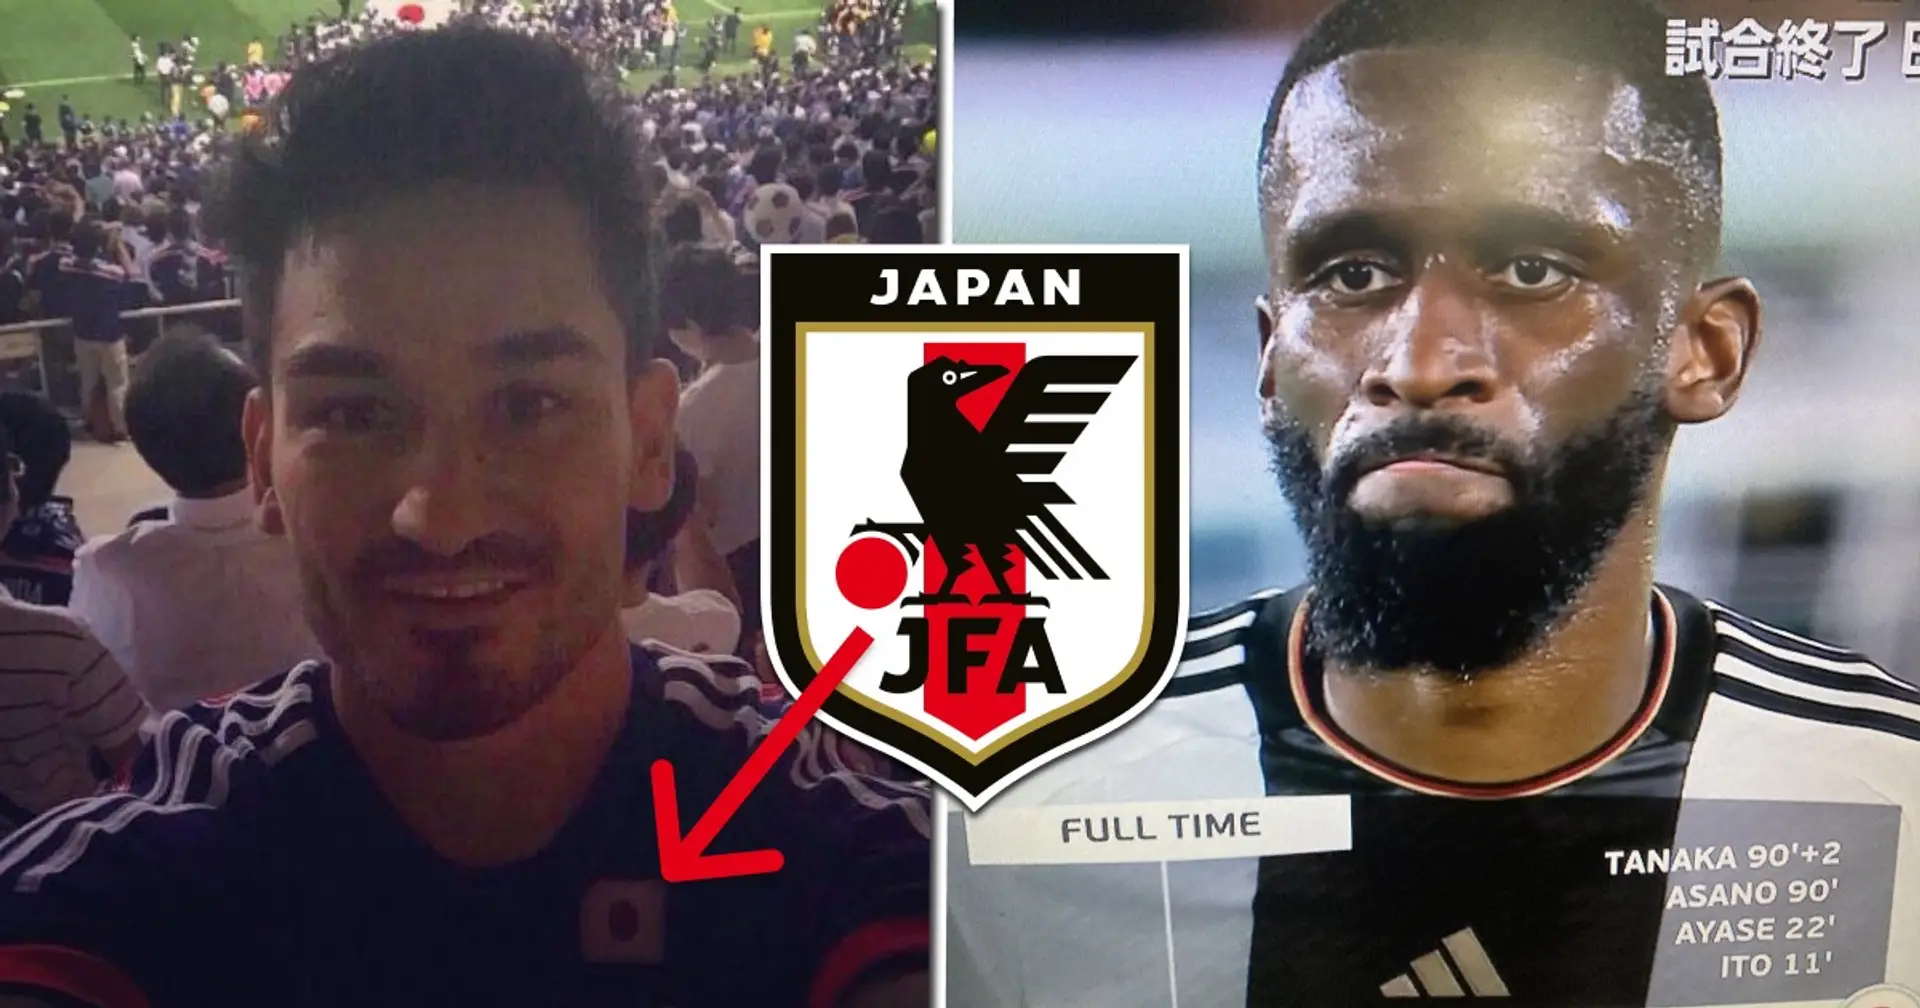 Pourquoi la photo de Gundogan portant le maillot du Japon est-elle à la mode après que le Japon ait battu l'Allemagne 4-1 ? Explication